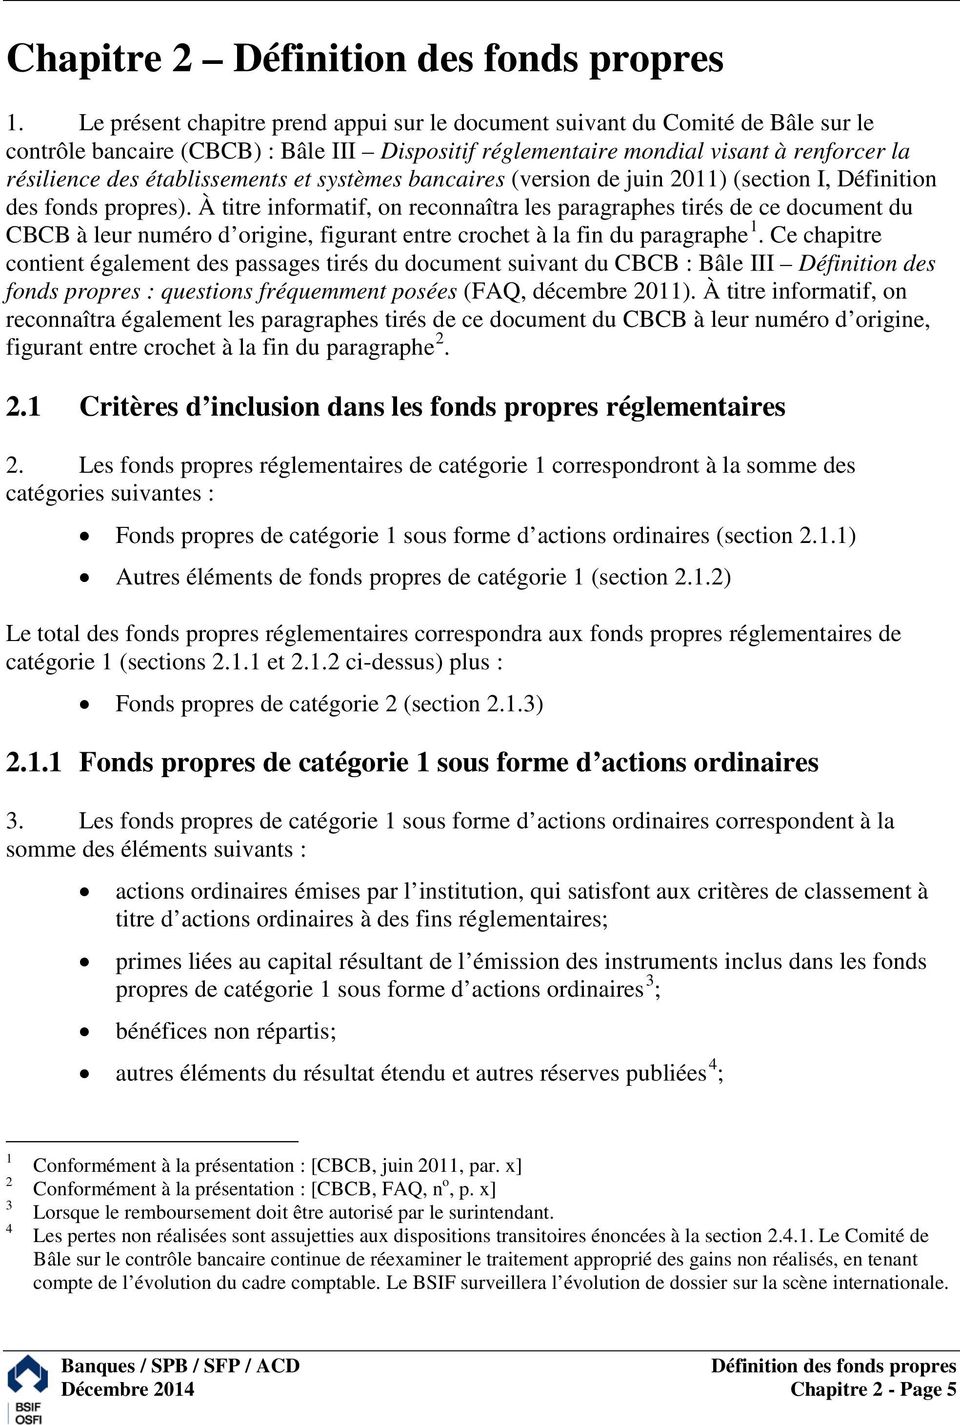 établissements et systèmes bancaires (version de juin 2011) (section I, Définition des fonds propres).